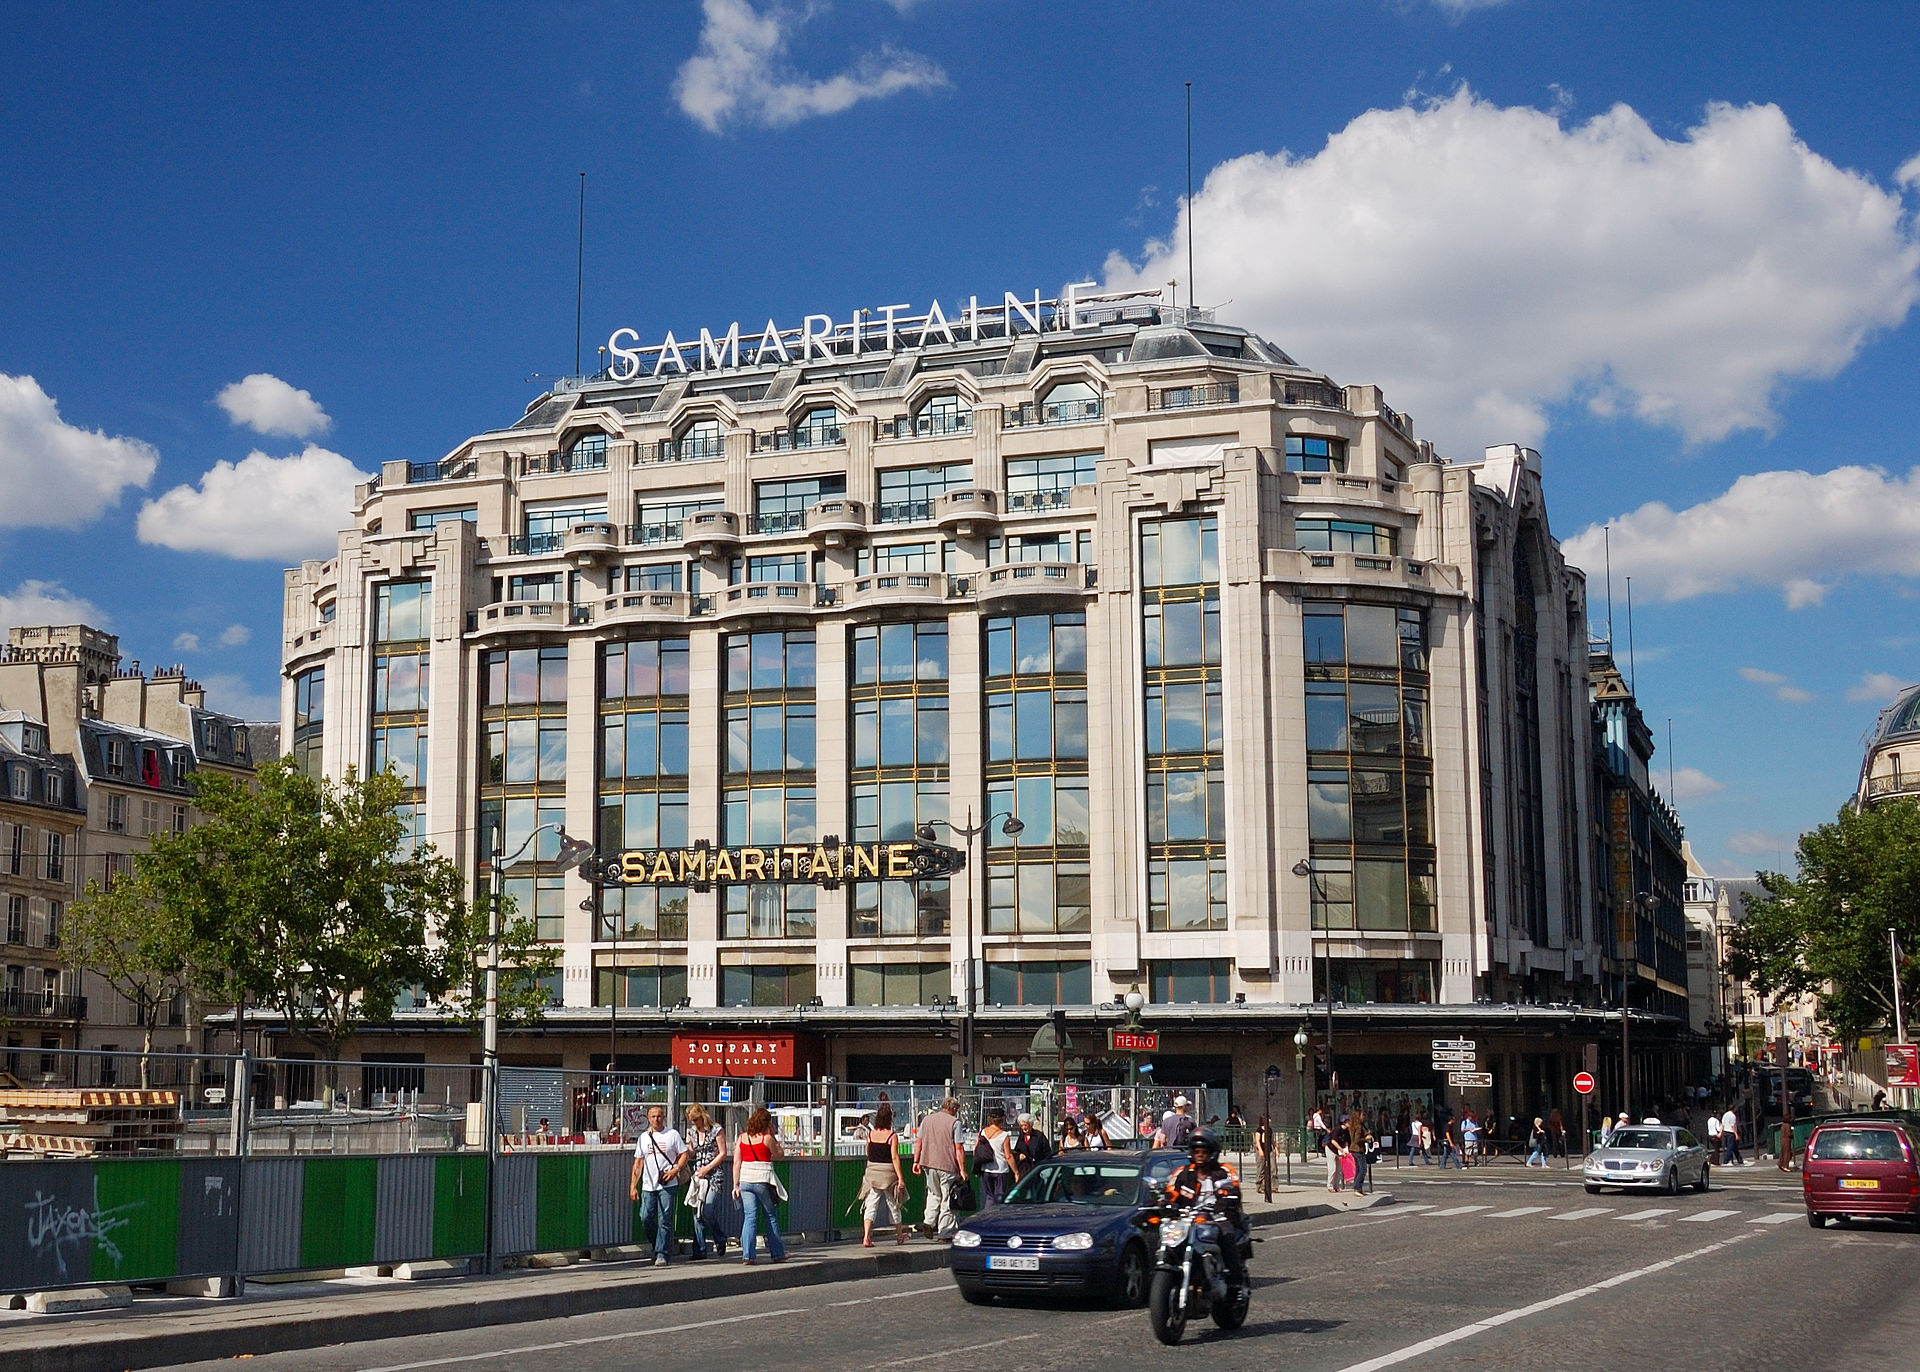 Samaritaine, Parisian Department Store